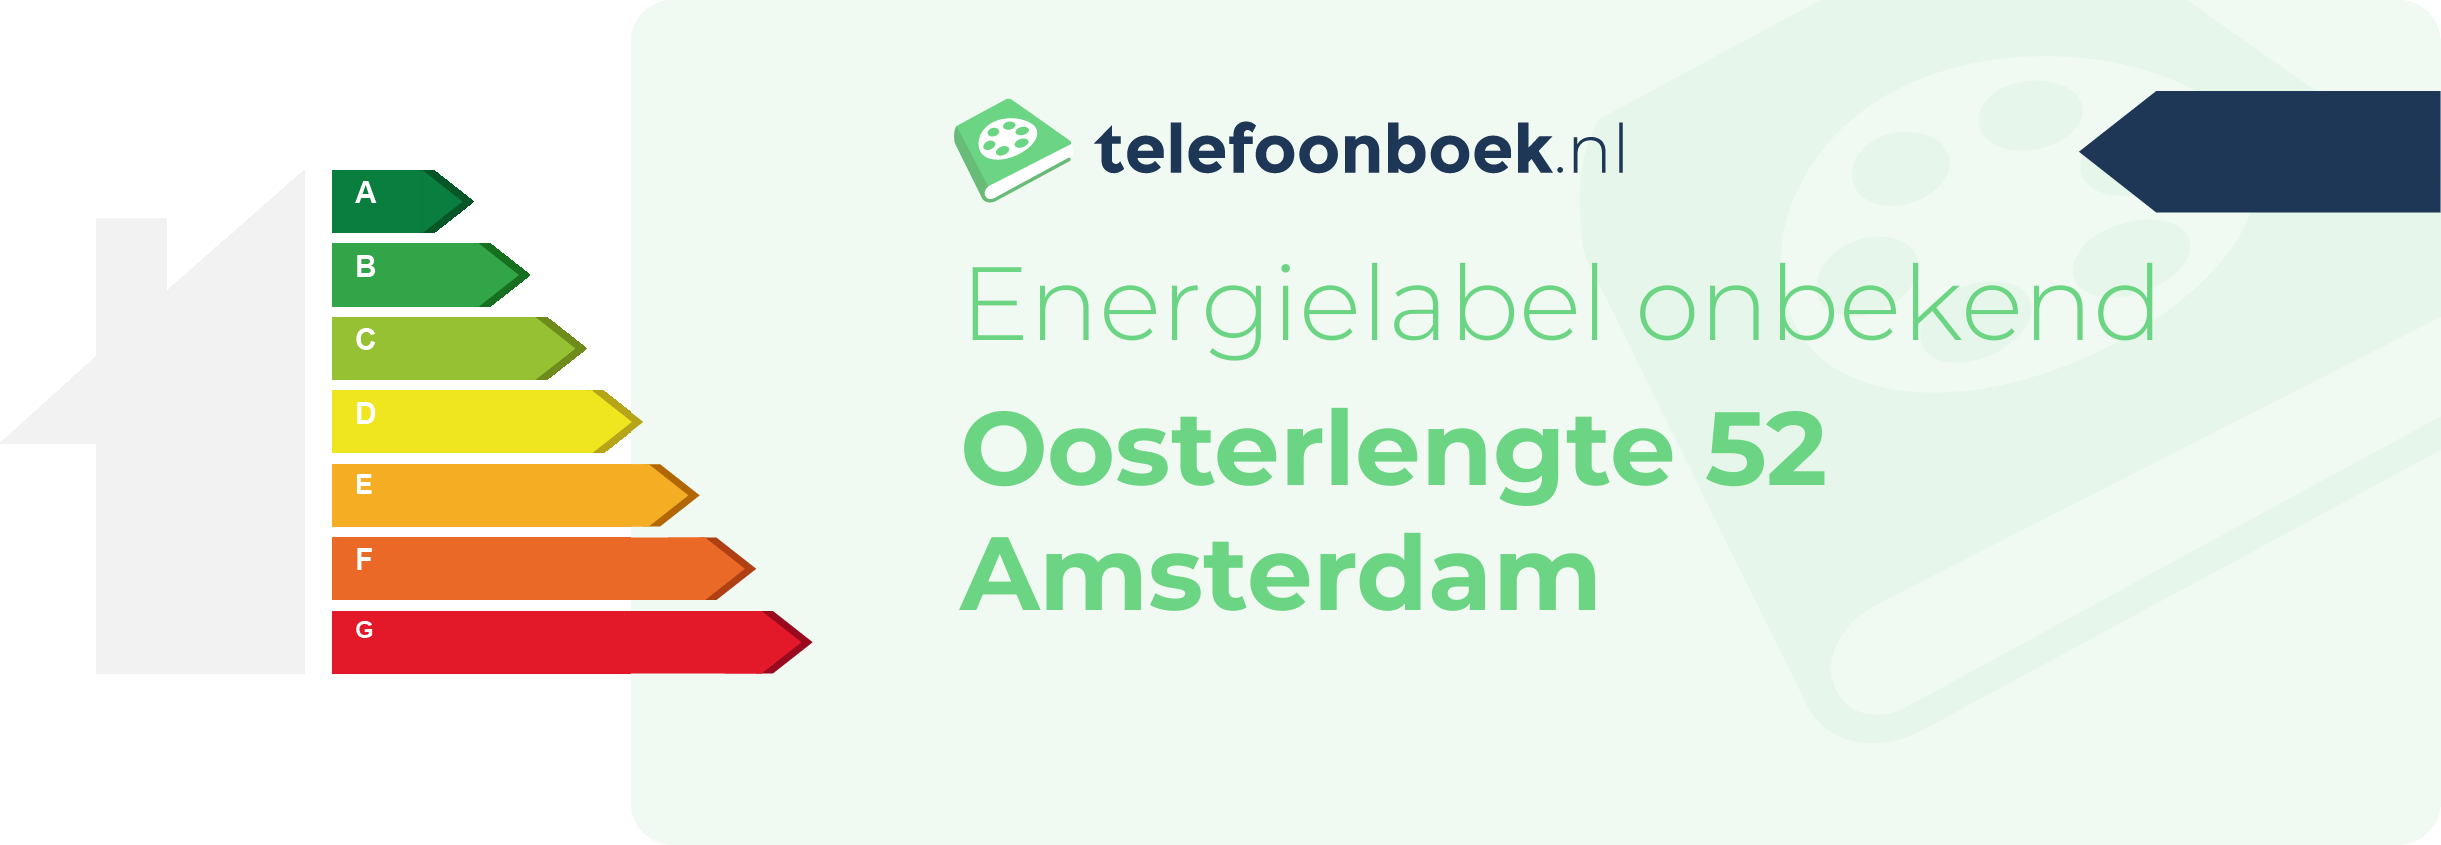 Energielabel Oosterlengte 52 Amsterdam